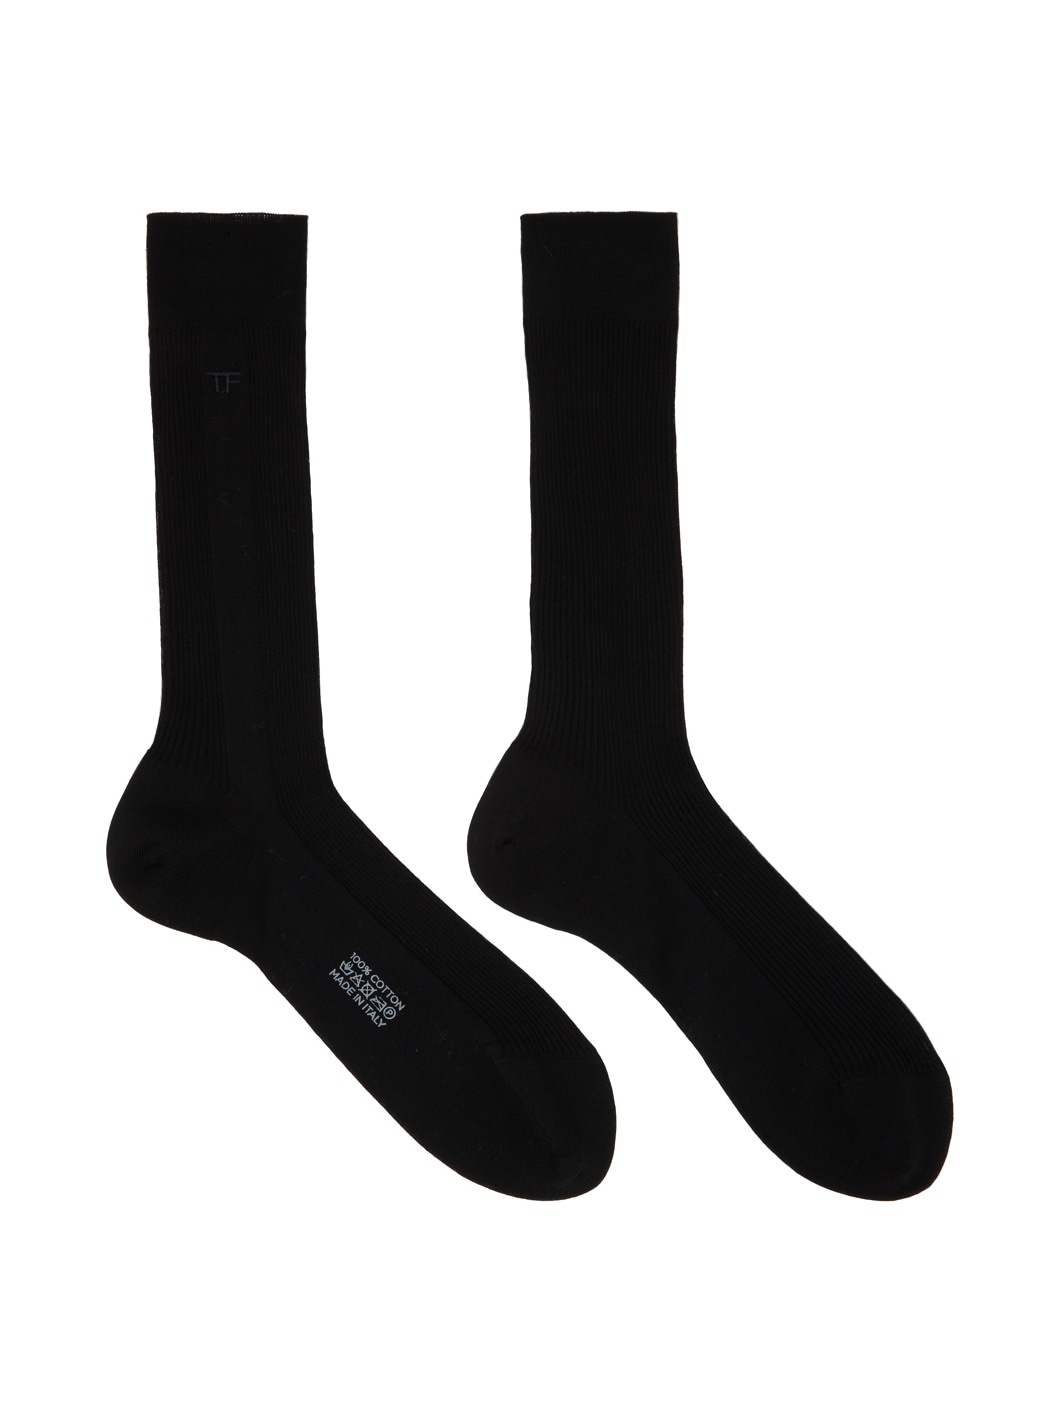 Black Embroidered Socks - 1